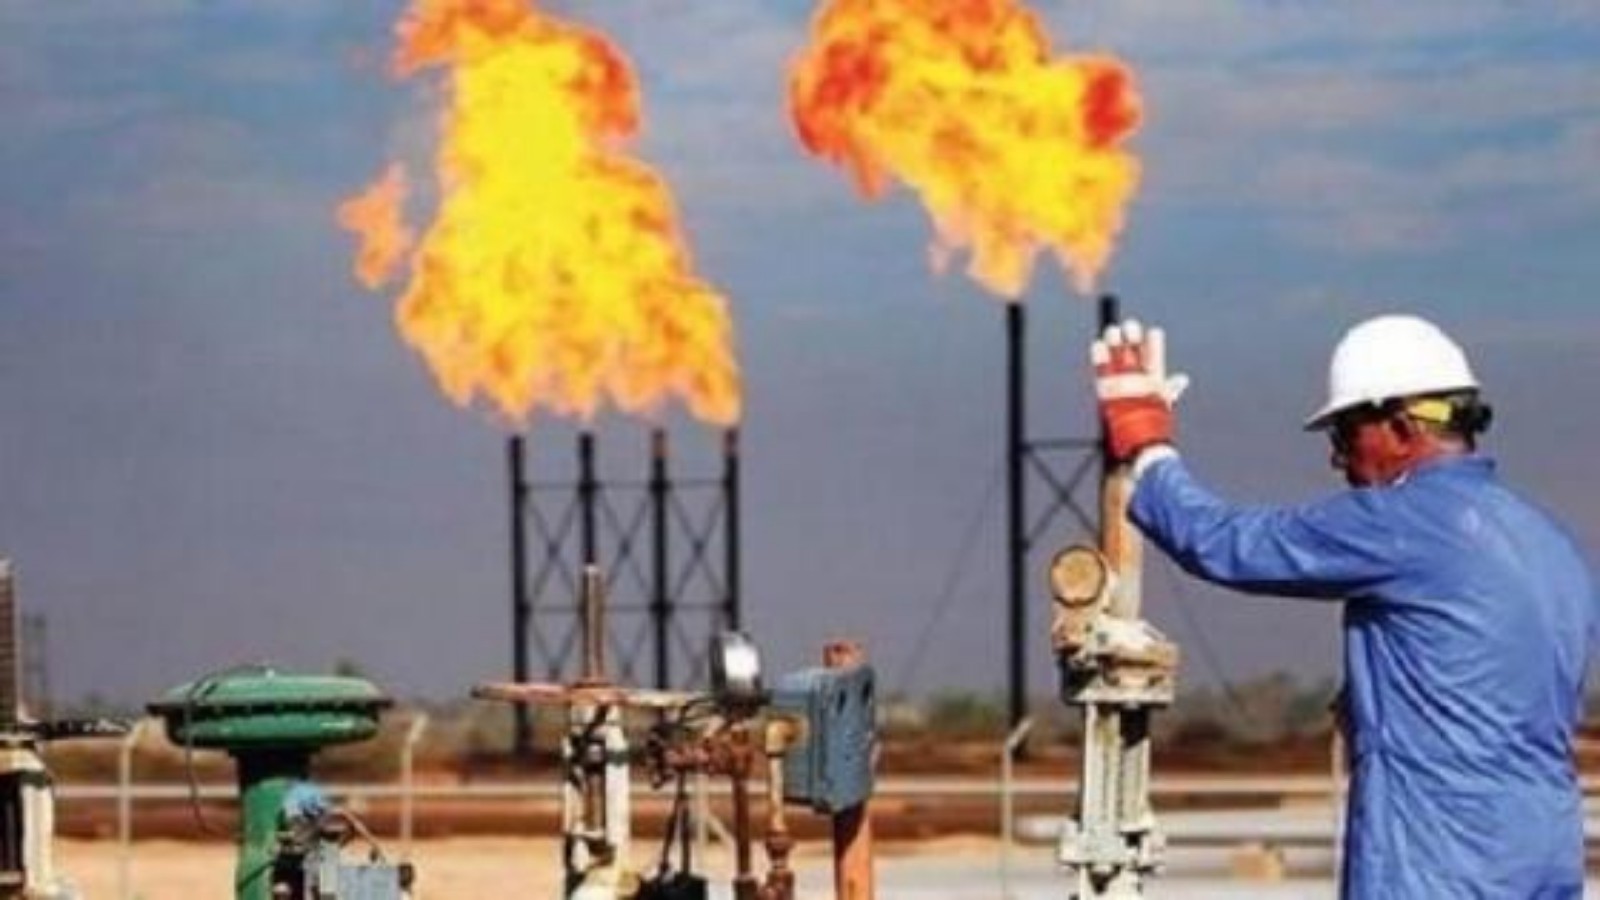 أين وصل مشروع “أنشوا” لإنتاج الغاز المغربي ؟